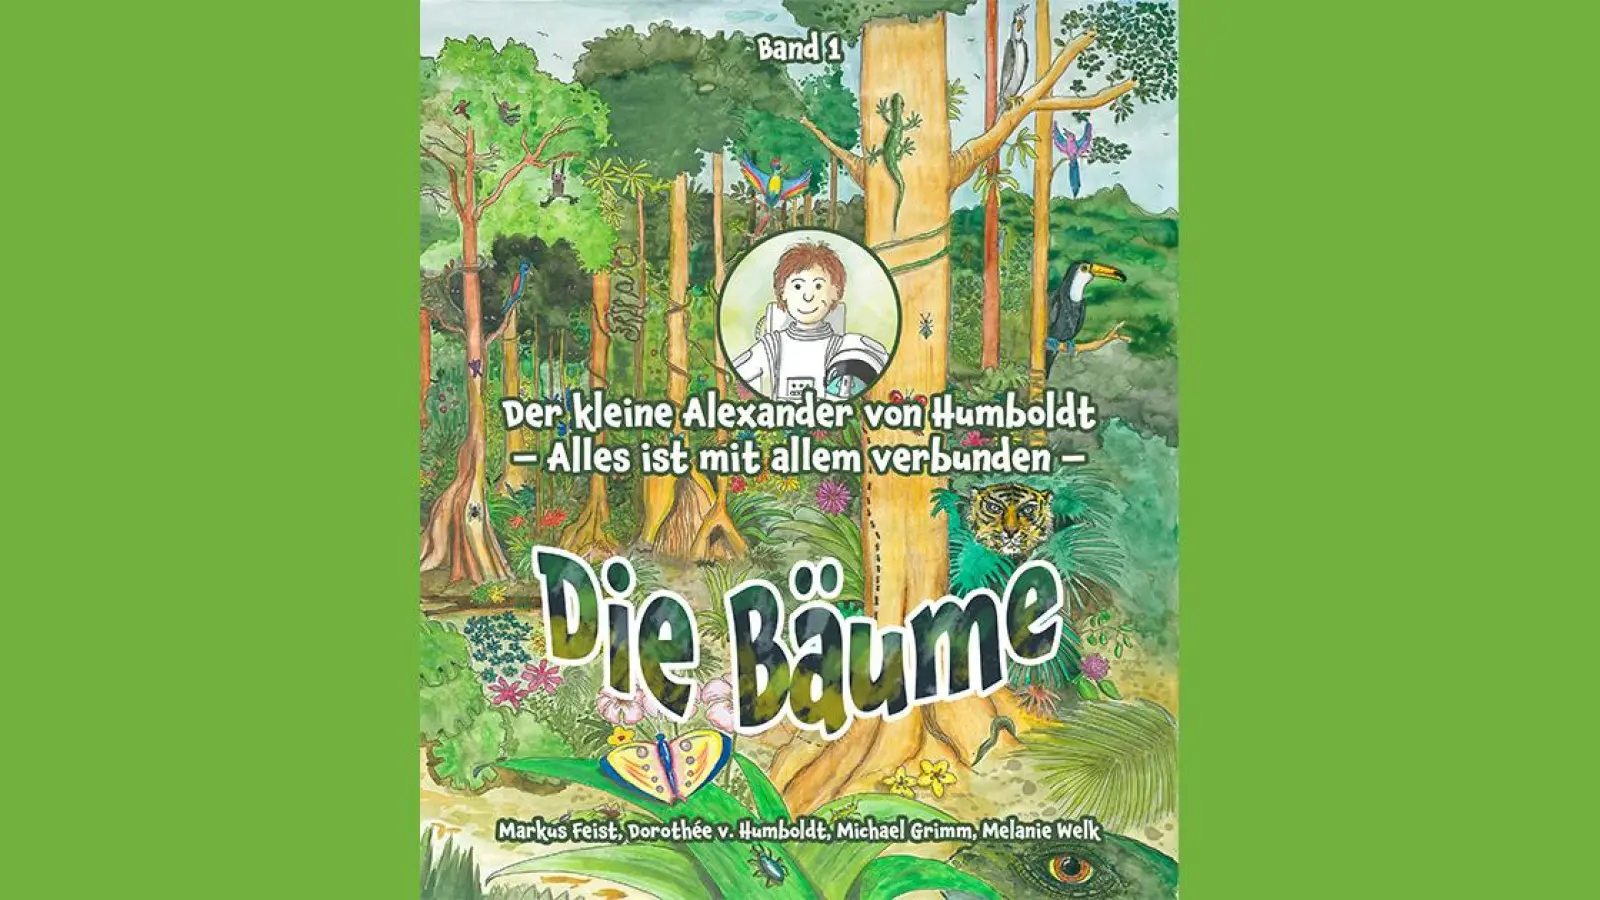 Veranstaltungen in Bayreuth: Lesung mit Signierstunde (Foto: red)